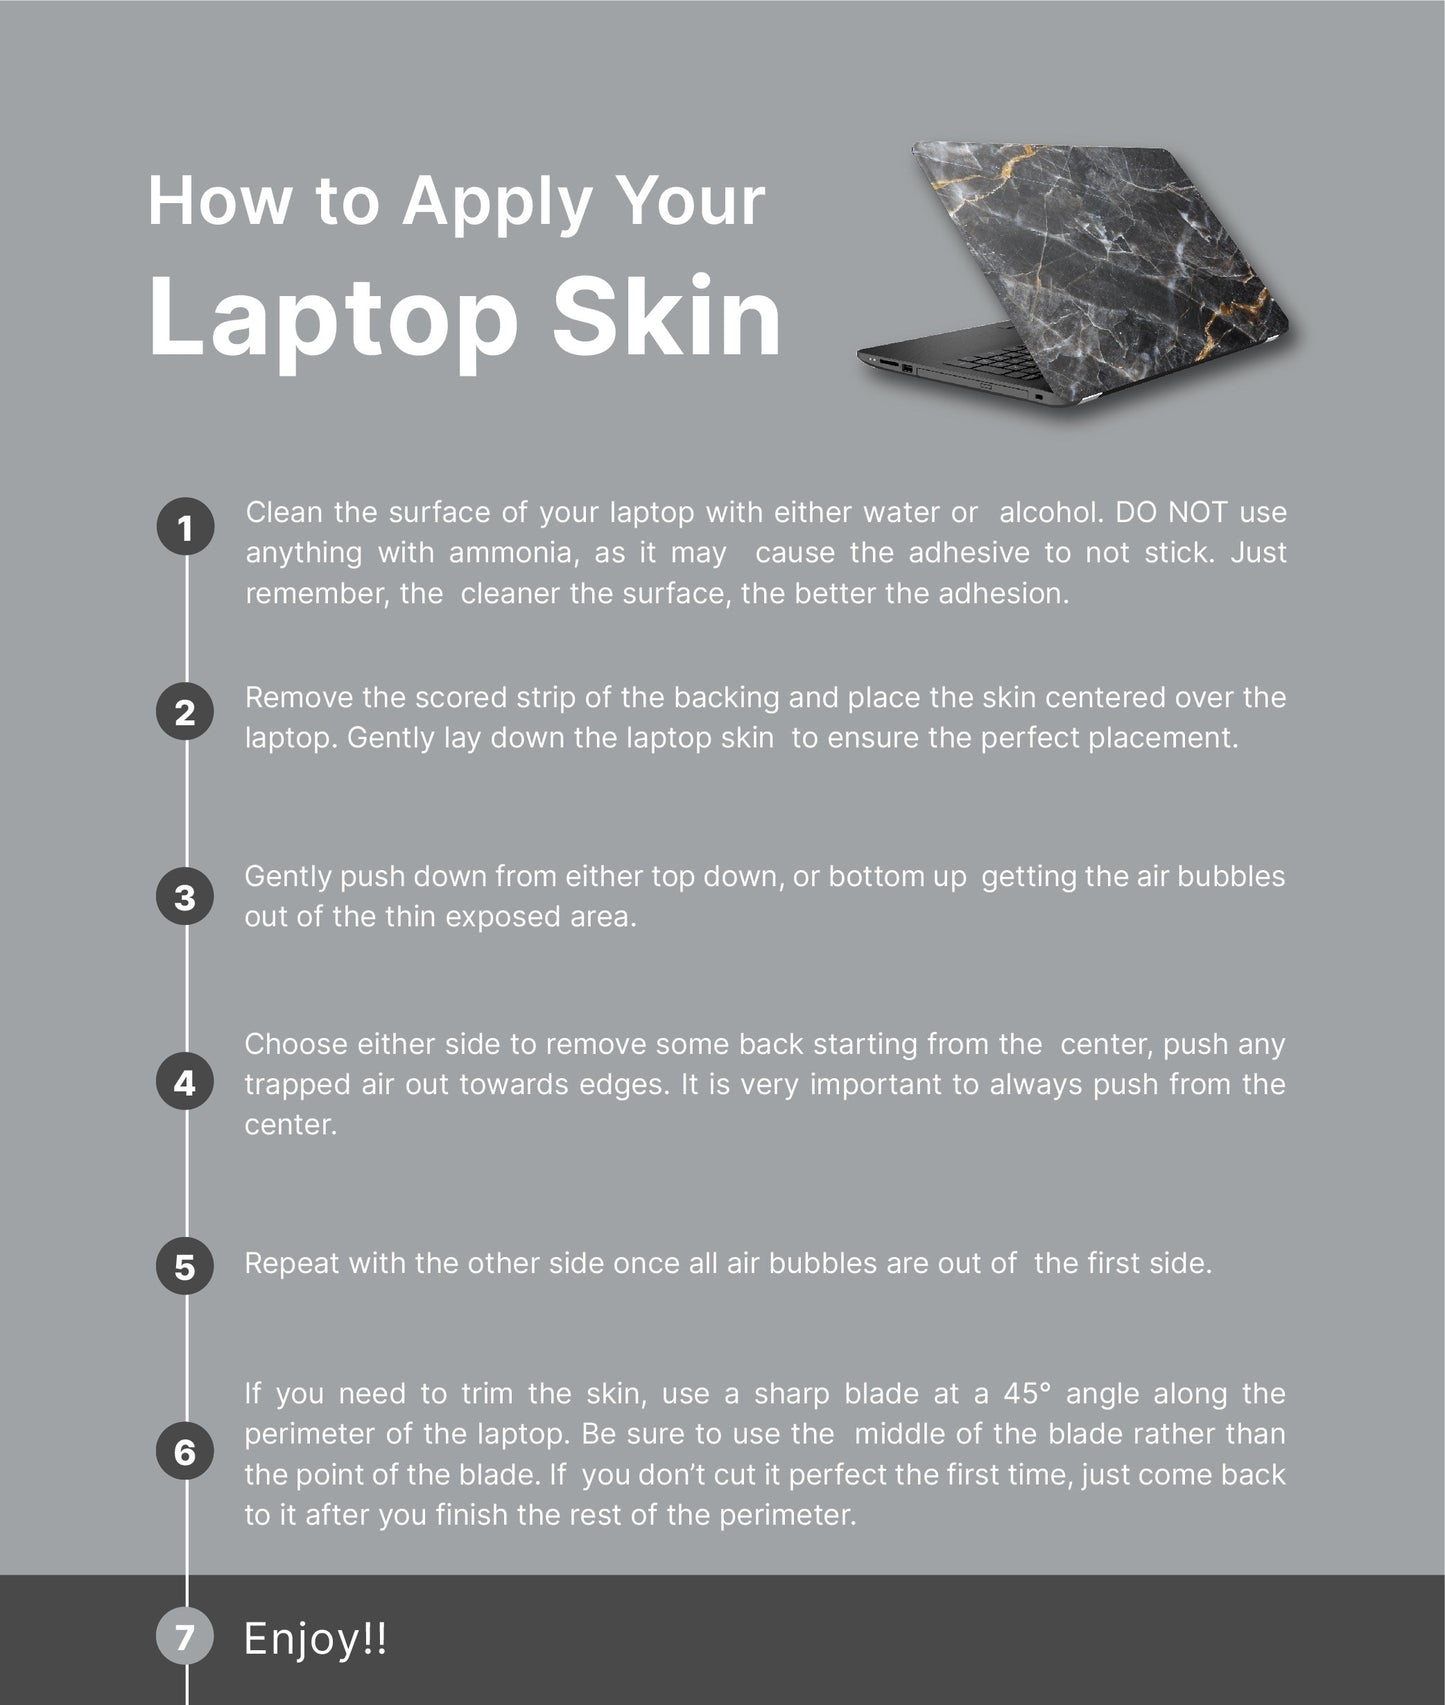 Cute Mushroom Laptop Skin, Laptop Cover, Laptop Skins, Removable Laptop Skins, Laptop Decal, Customized Laptop Skin, Laptop Stickers 404